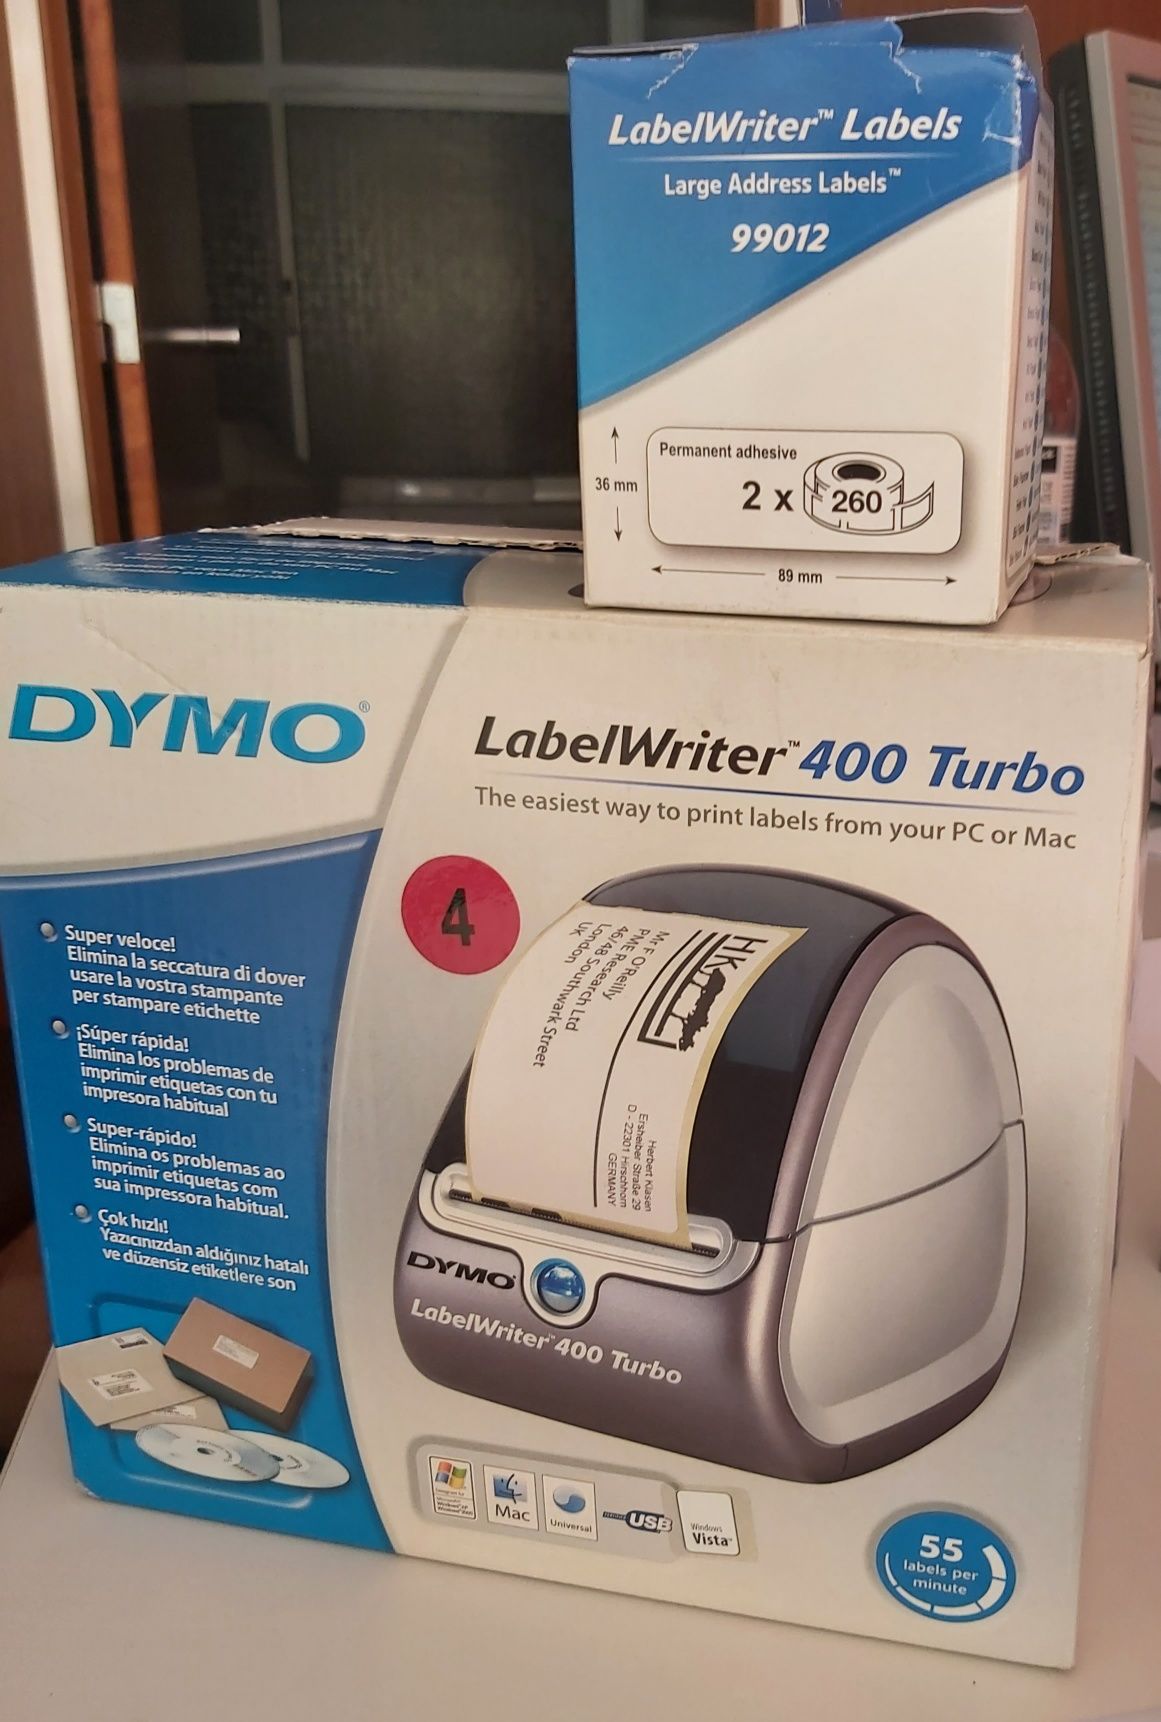 Máquina Dymo LabelWriter 400 Turbo